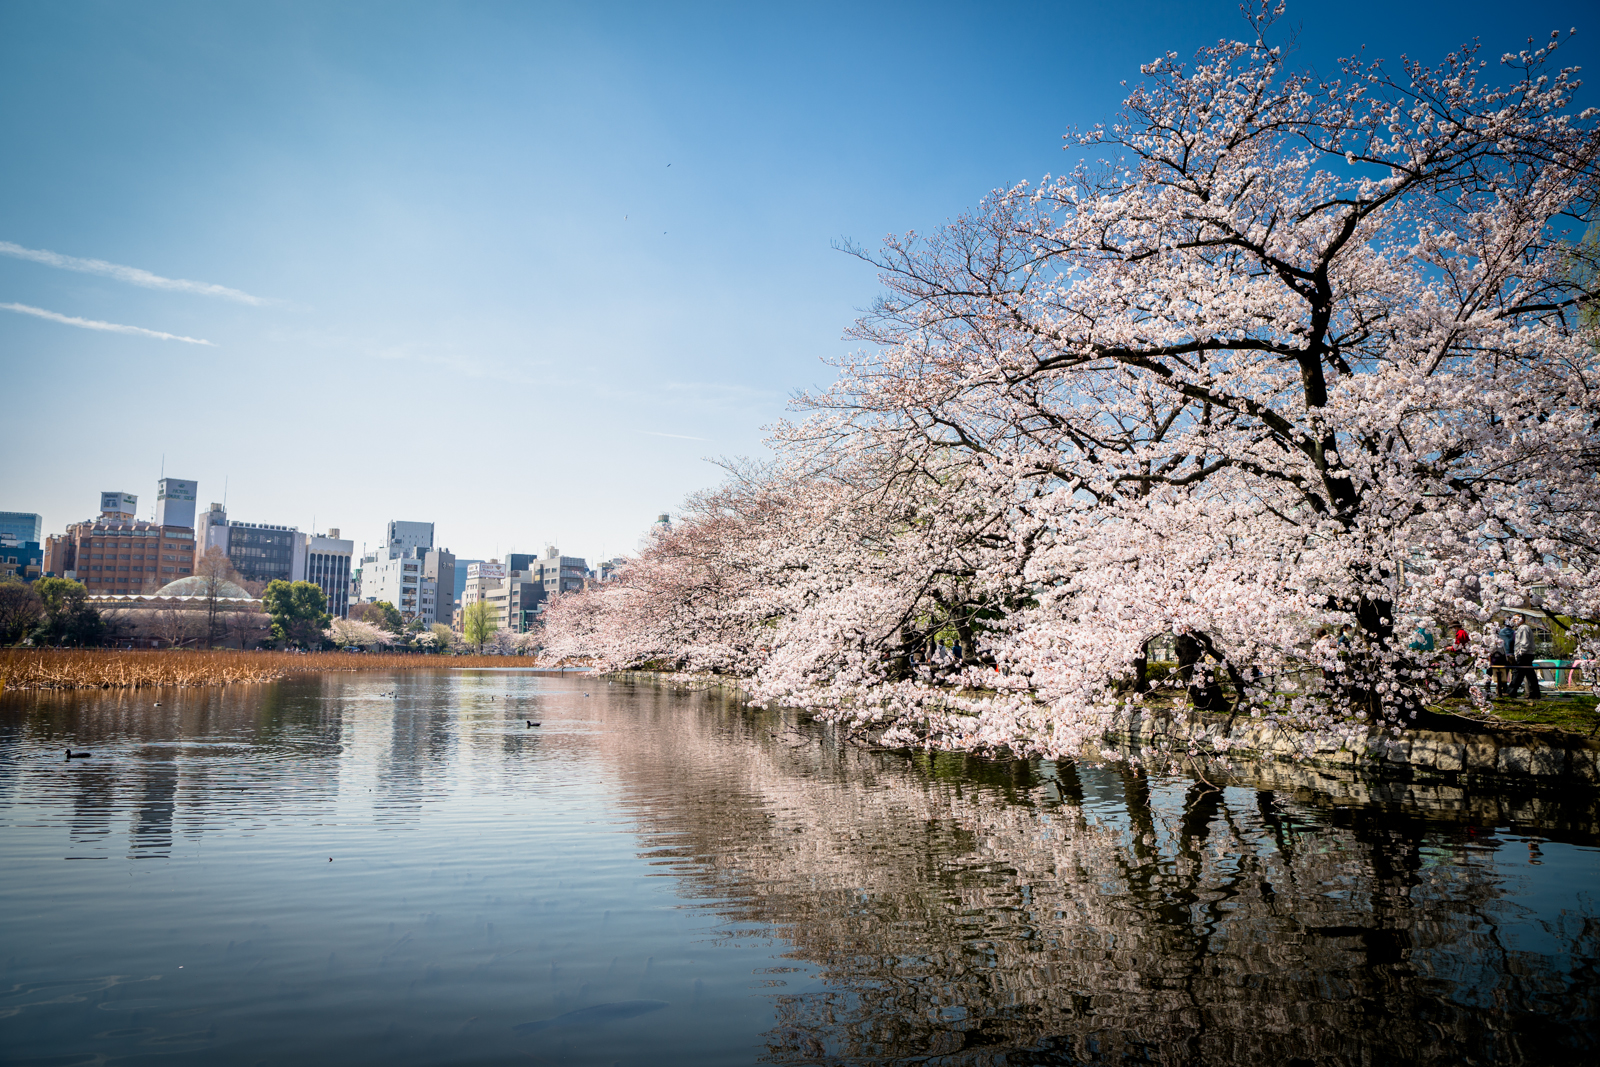 上野恩賜公園の桜の写真